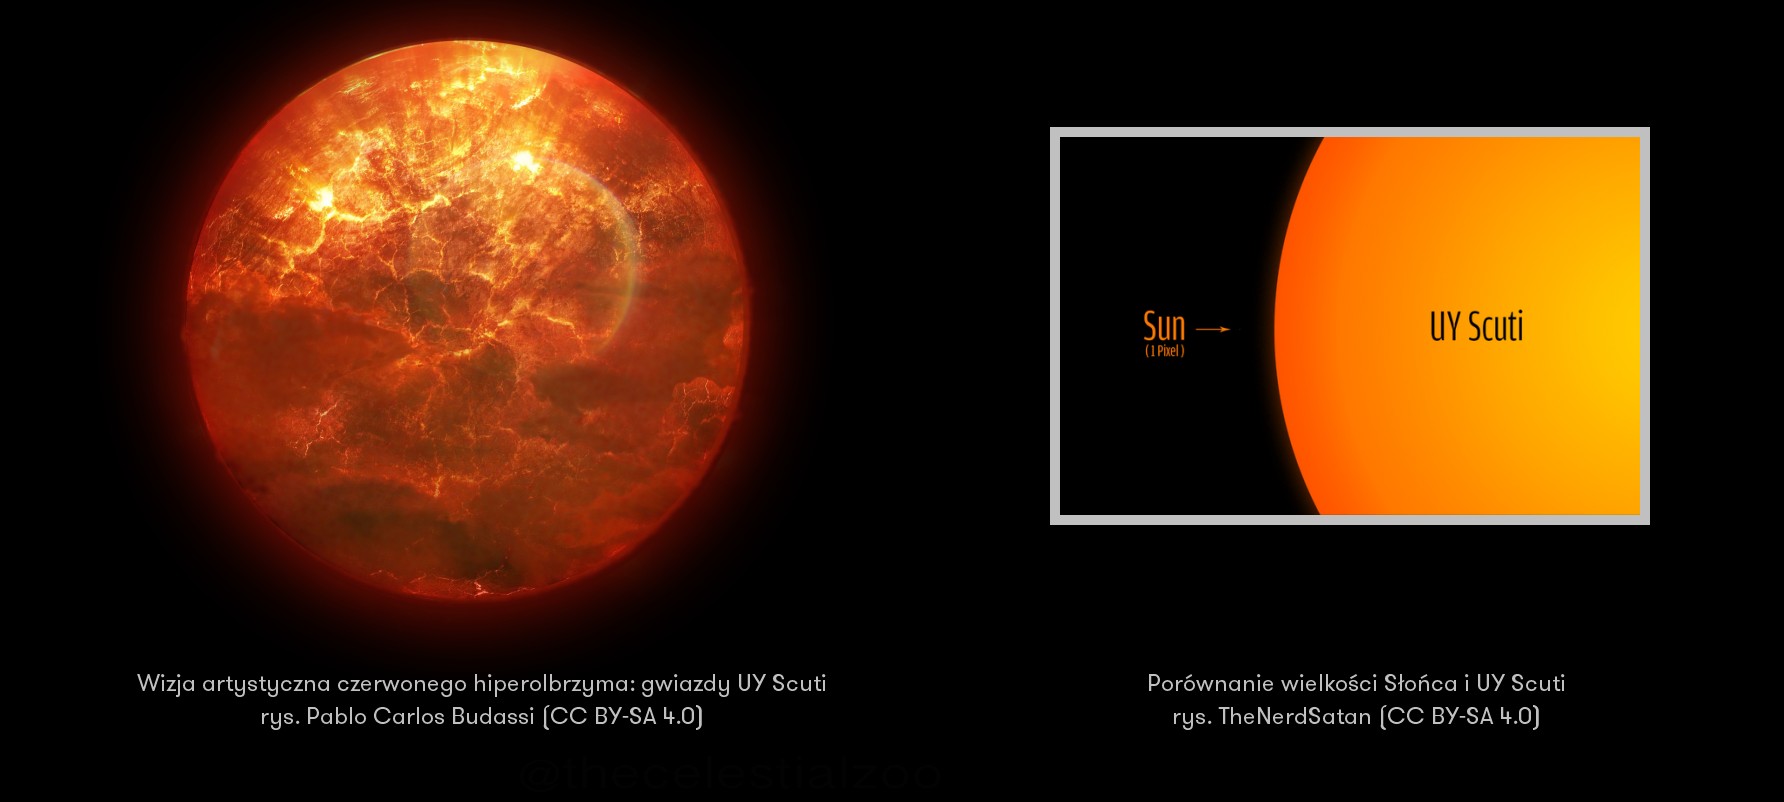 UY Scuti - jedna z największych znanych nam planet wraz z porównaniem wielkości do Słońca